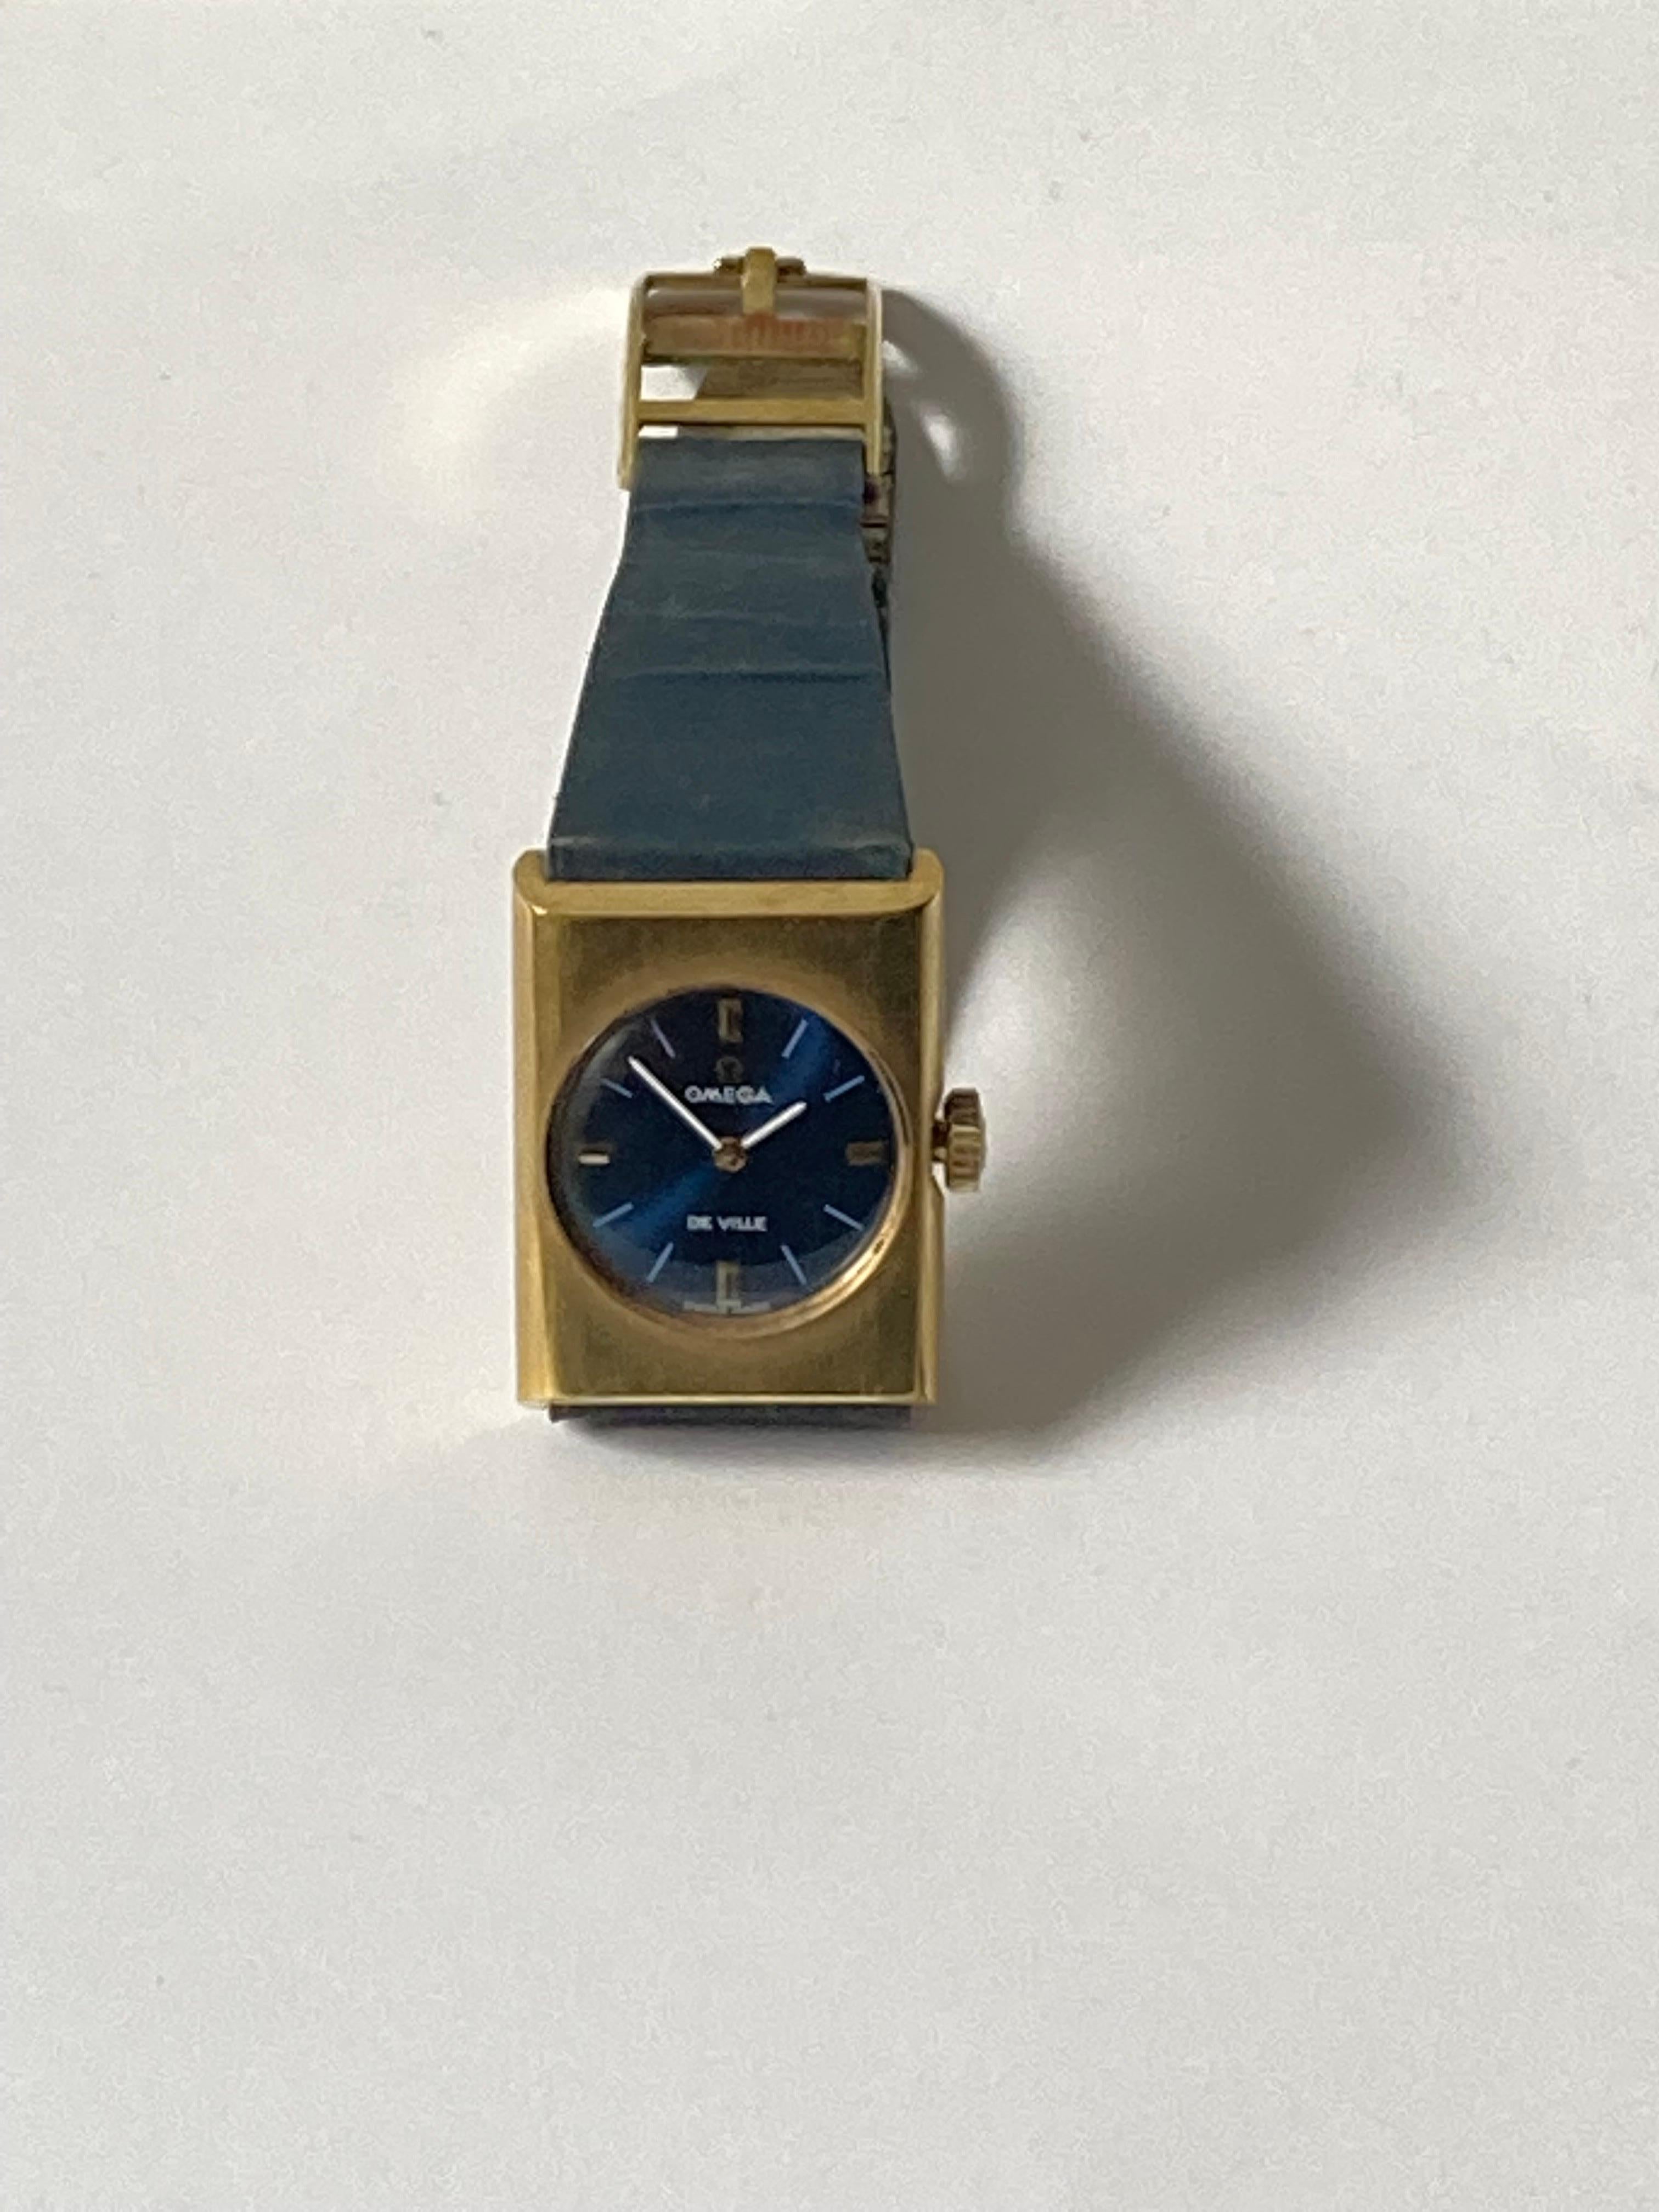 1969 Omega De Ville mechanische Uhr, mit tiefblauem Zifferblatt, 18 Karat vergoldetem Gehäuse, Originalarmband und applizierten Indexen in den Himmelsrichtungen 3, 6, 9 und 12.

Die Uhr trägt kein Seamaster-Branding, was ein Hinweis auf das